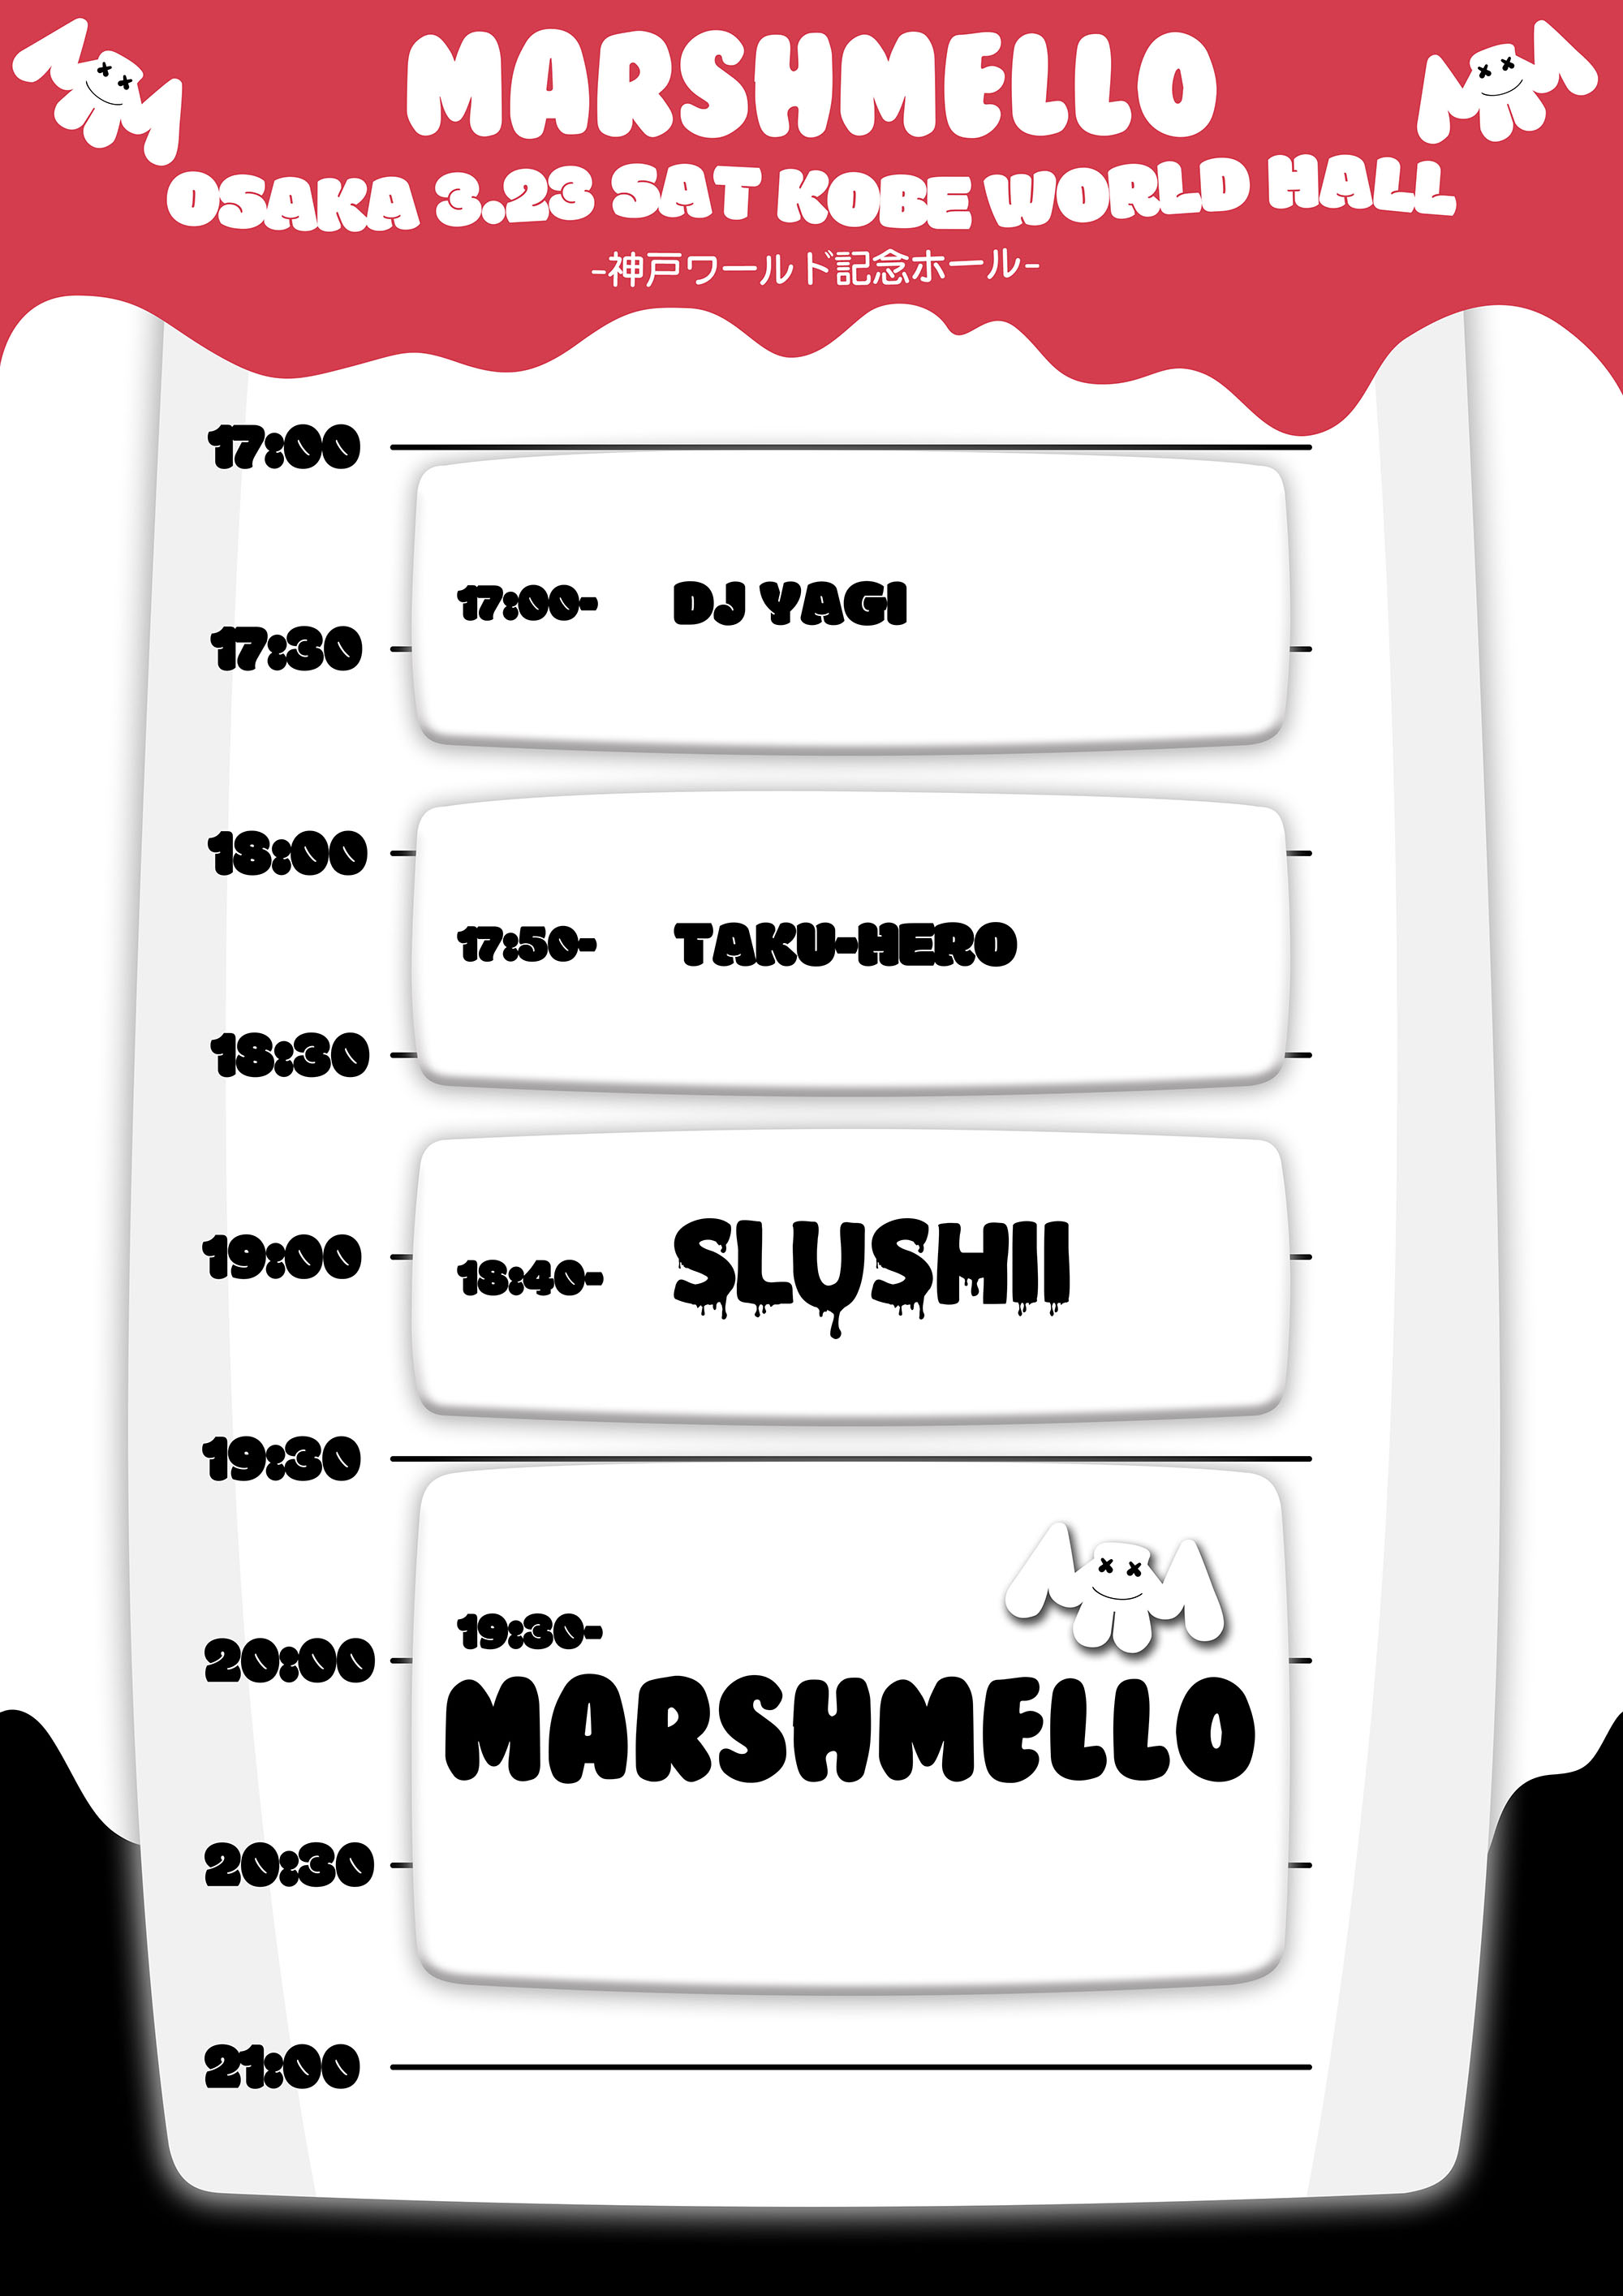 マシュメロ来日公演 Marshmello 初の大型単独来日公演が決定